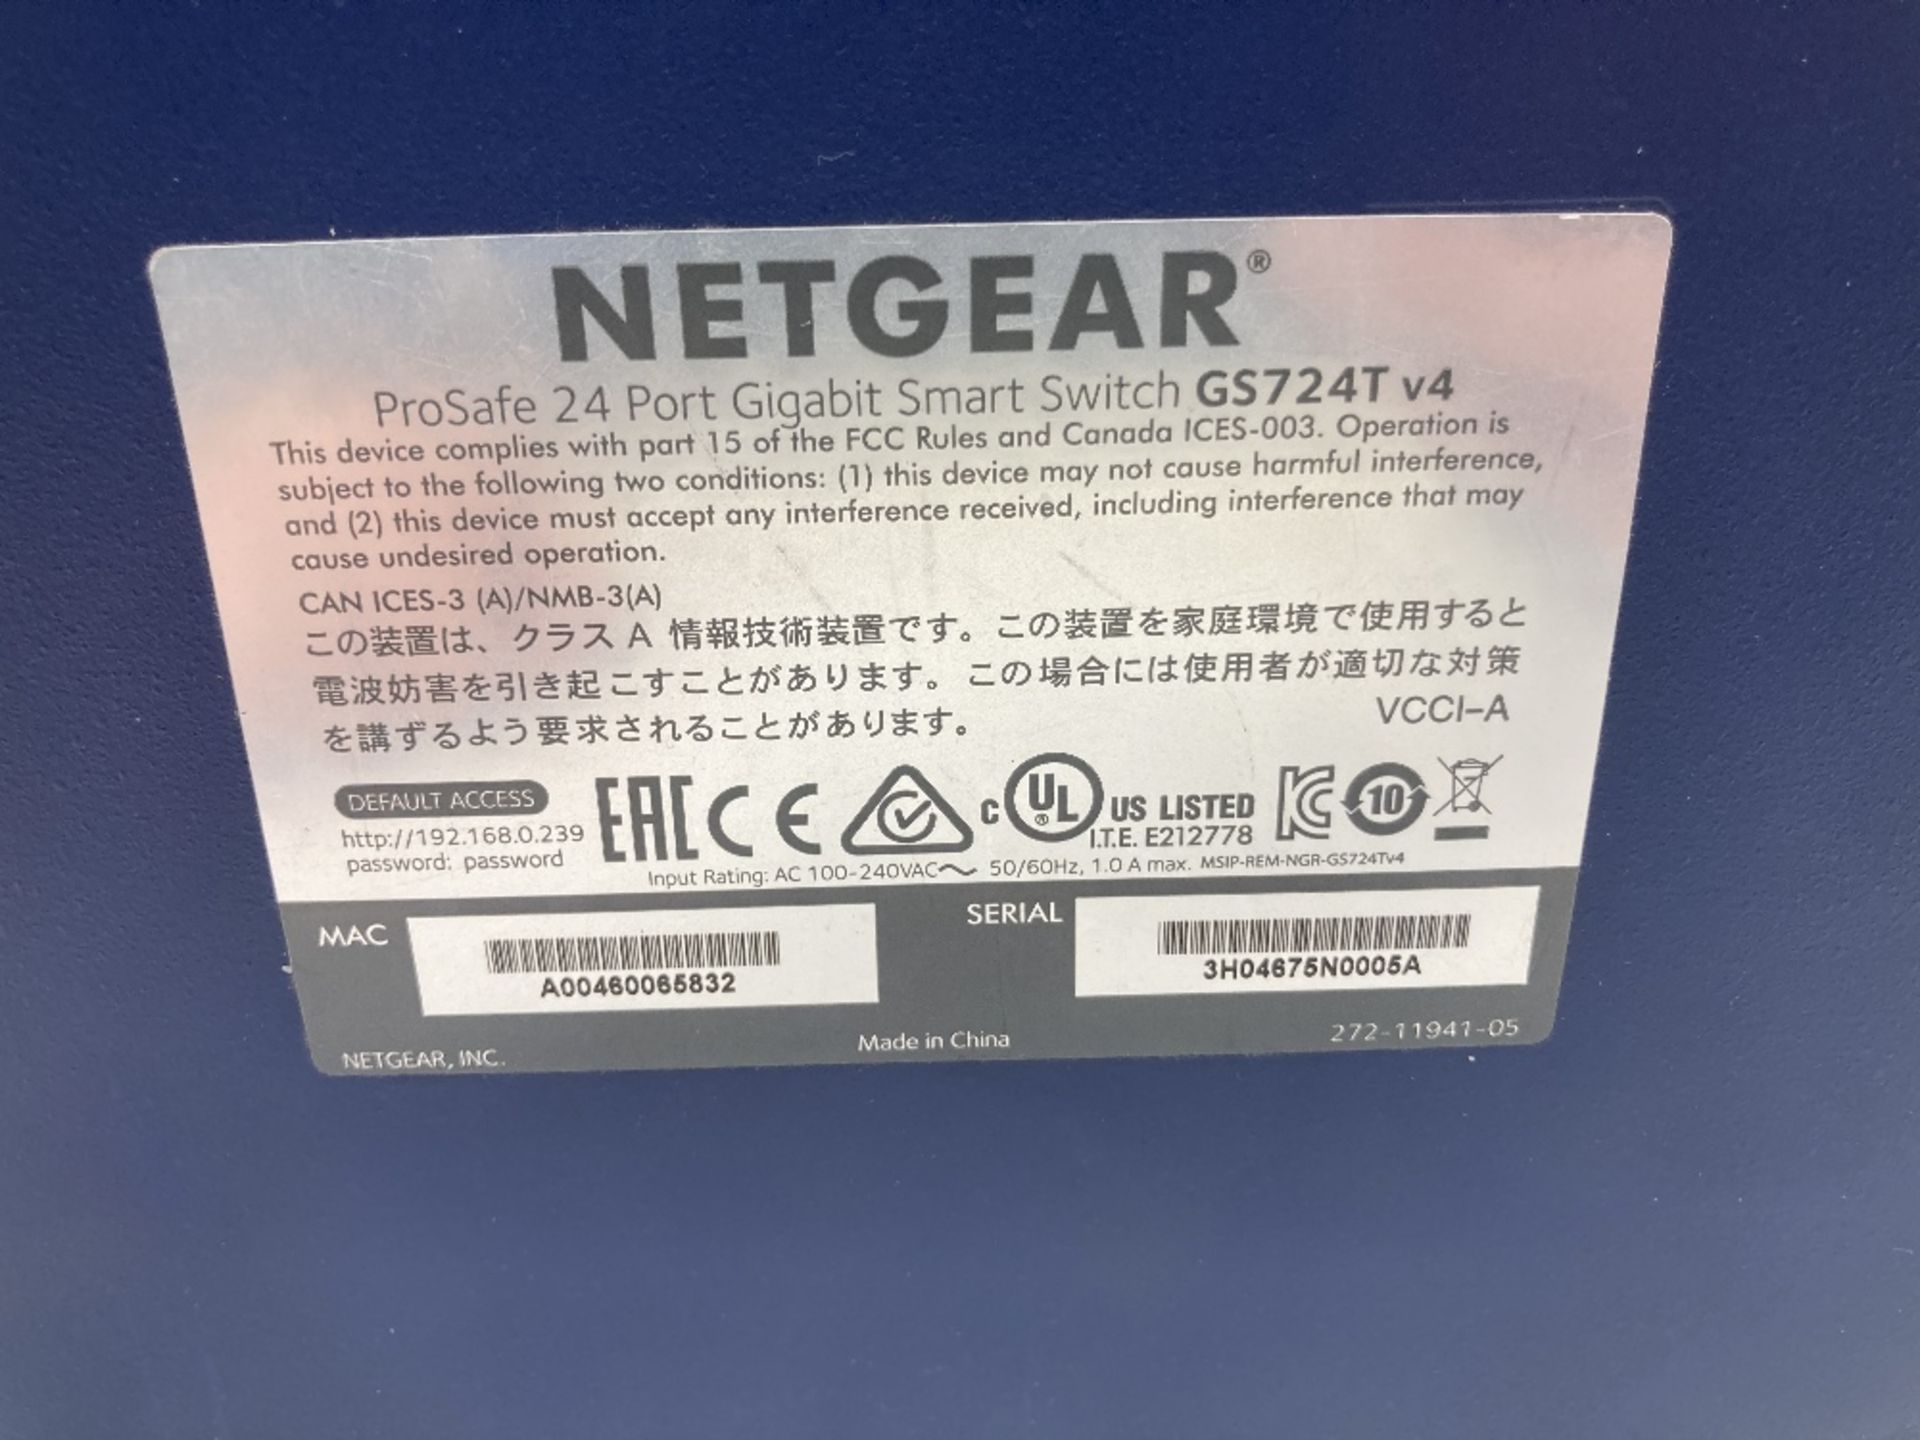 Netgear Prosafe 24-Port 10/100/1000 Mbps Smart Switch - Image 5 of 5